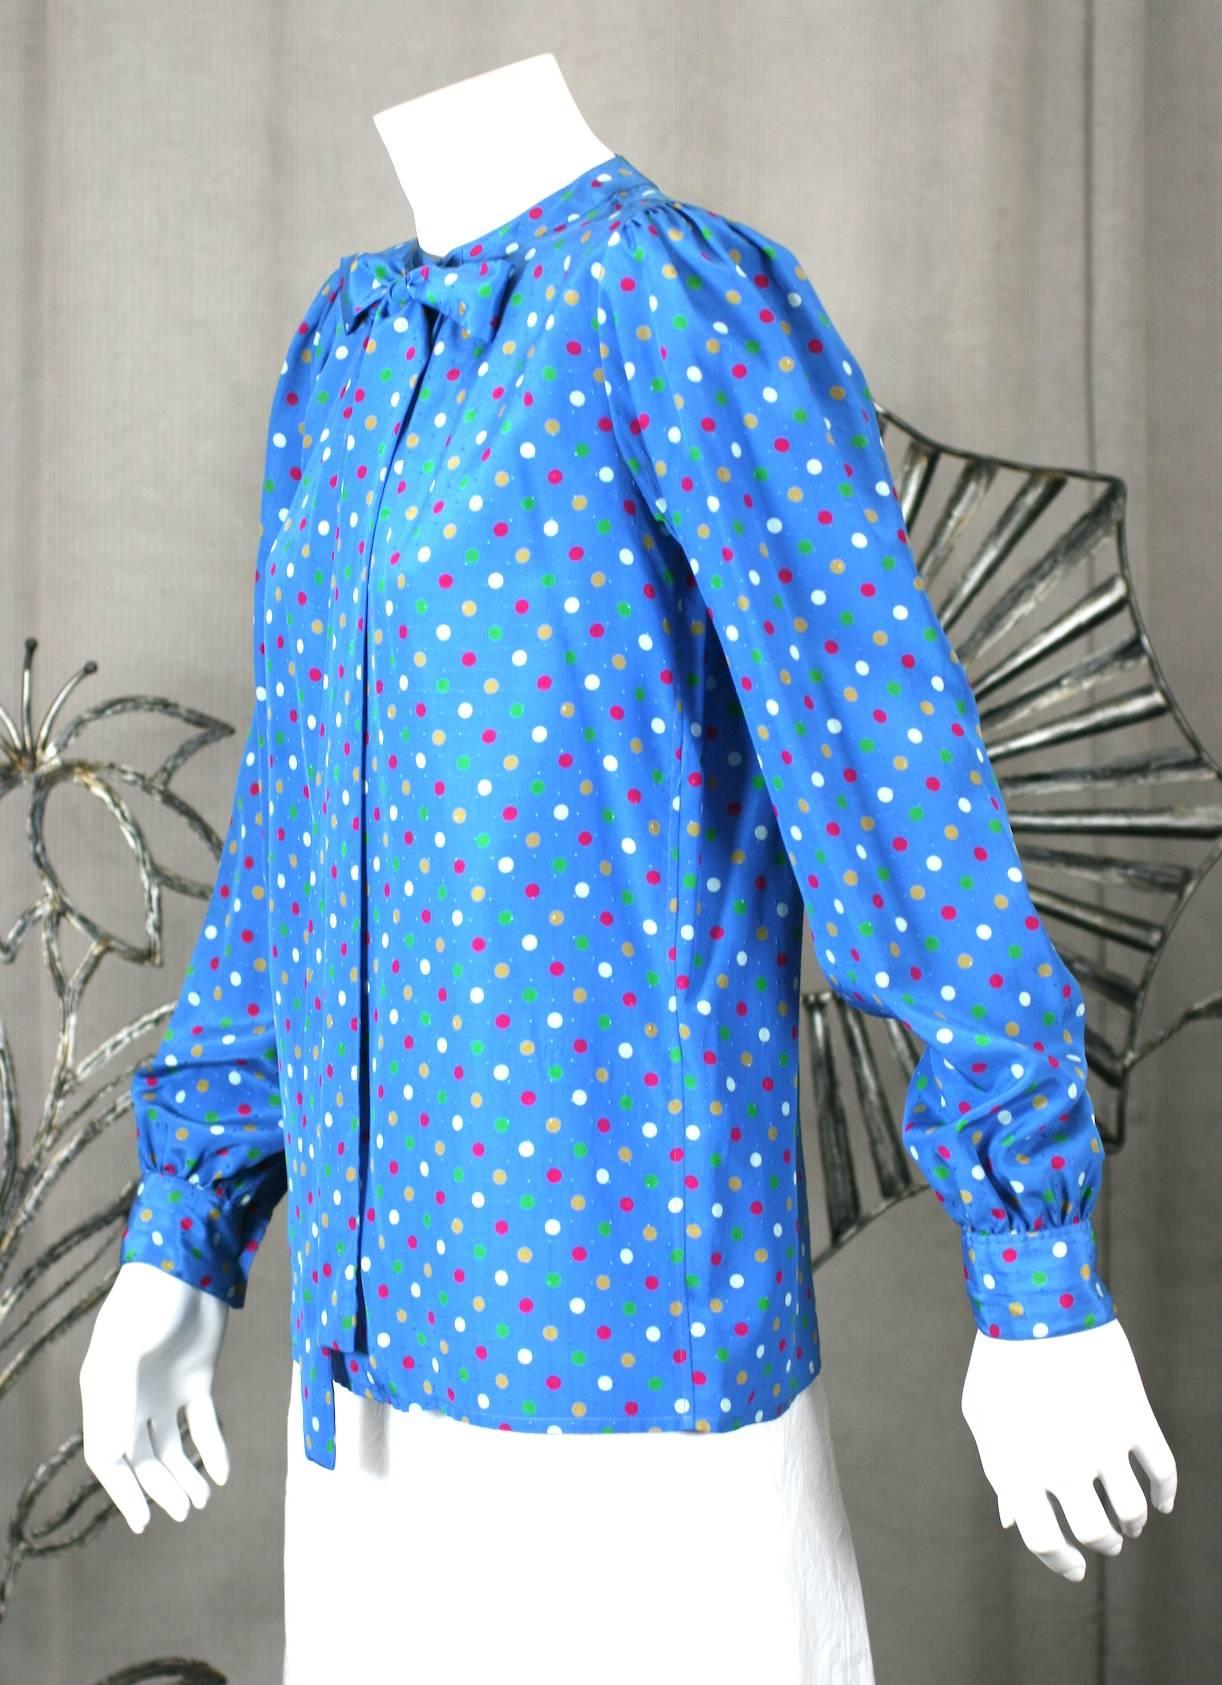 Yves Saint Laurent Polka Dot Bow Blouse mit vielen Verwandlungsmöglichkeiten. Kann gebunden oder offen getragen werden, wobei die Luftschlangen für einen entspannten Look herabhängen. 
Ein Knopf im Nacken mit tiefem, subversivem Schlitz vorne